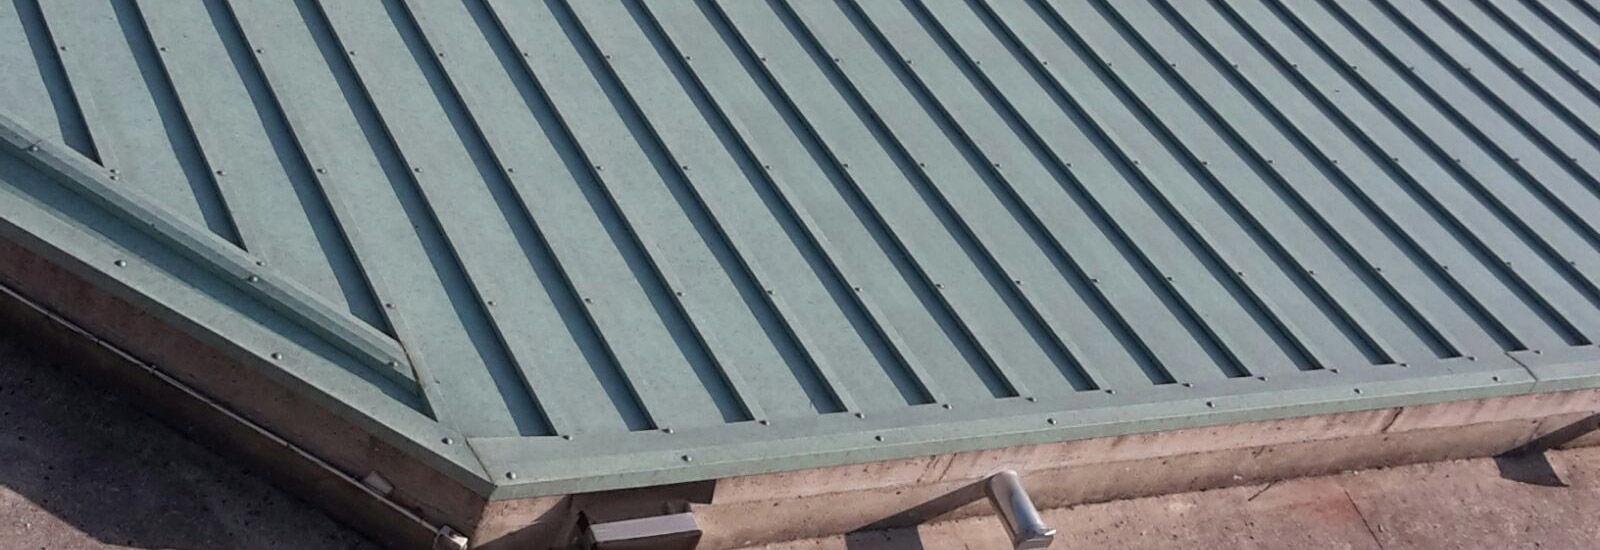 Realizzazione coperture in alluminio bergamo rifacimento e nuova realizzazione tettoie in alluminio